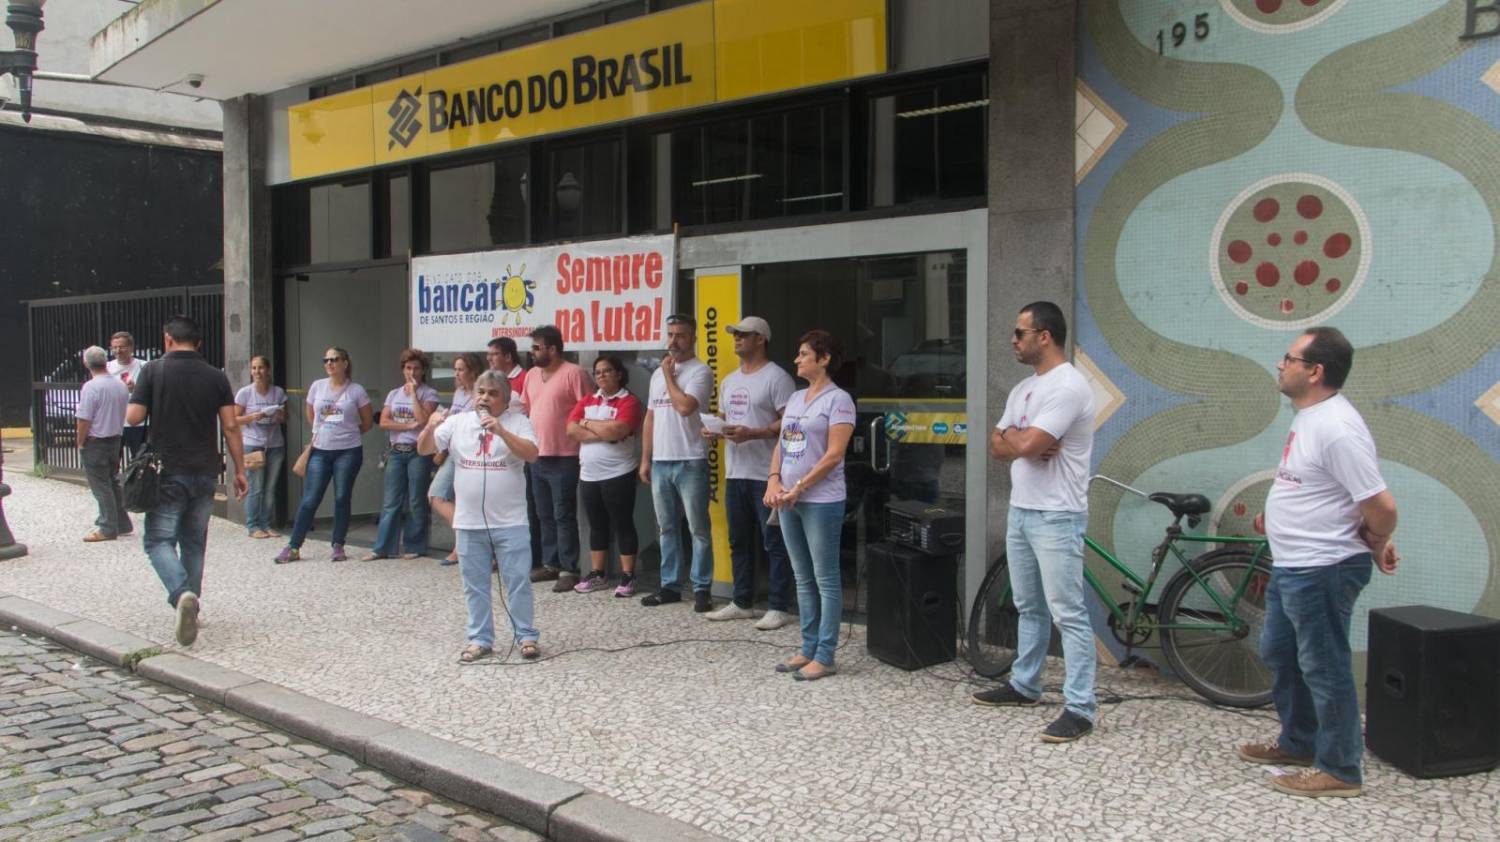 Banco do Brasil propõe reduzir prazo de descomissionamento e não avança na pauta